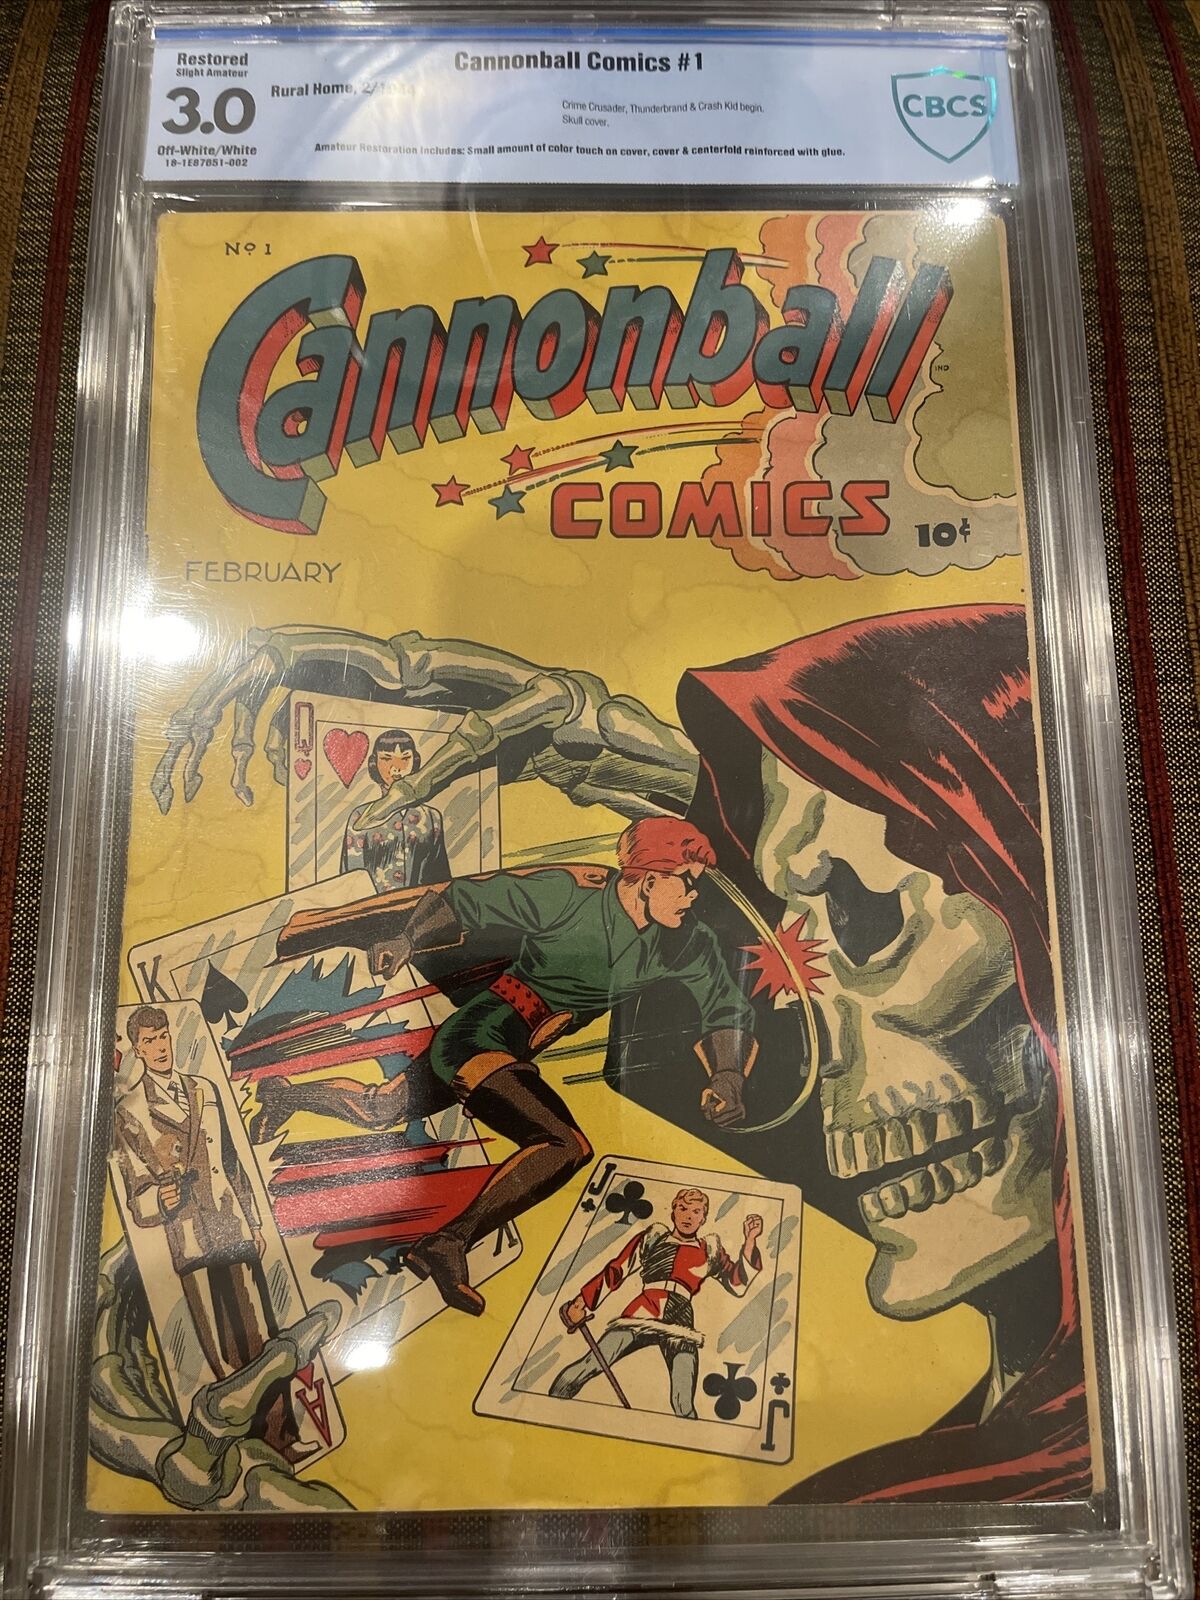 Cannonball Comics #1 1944 CBCS 3.0 Restored